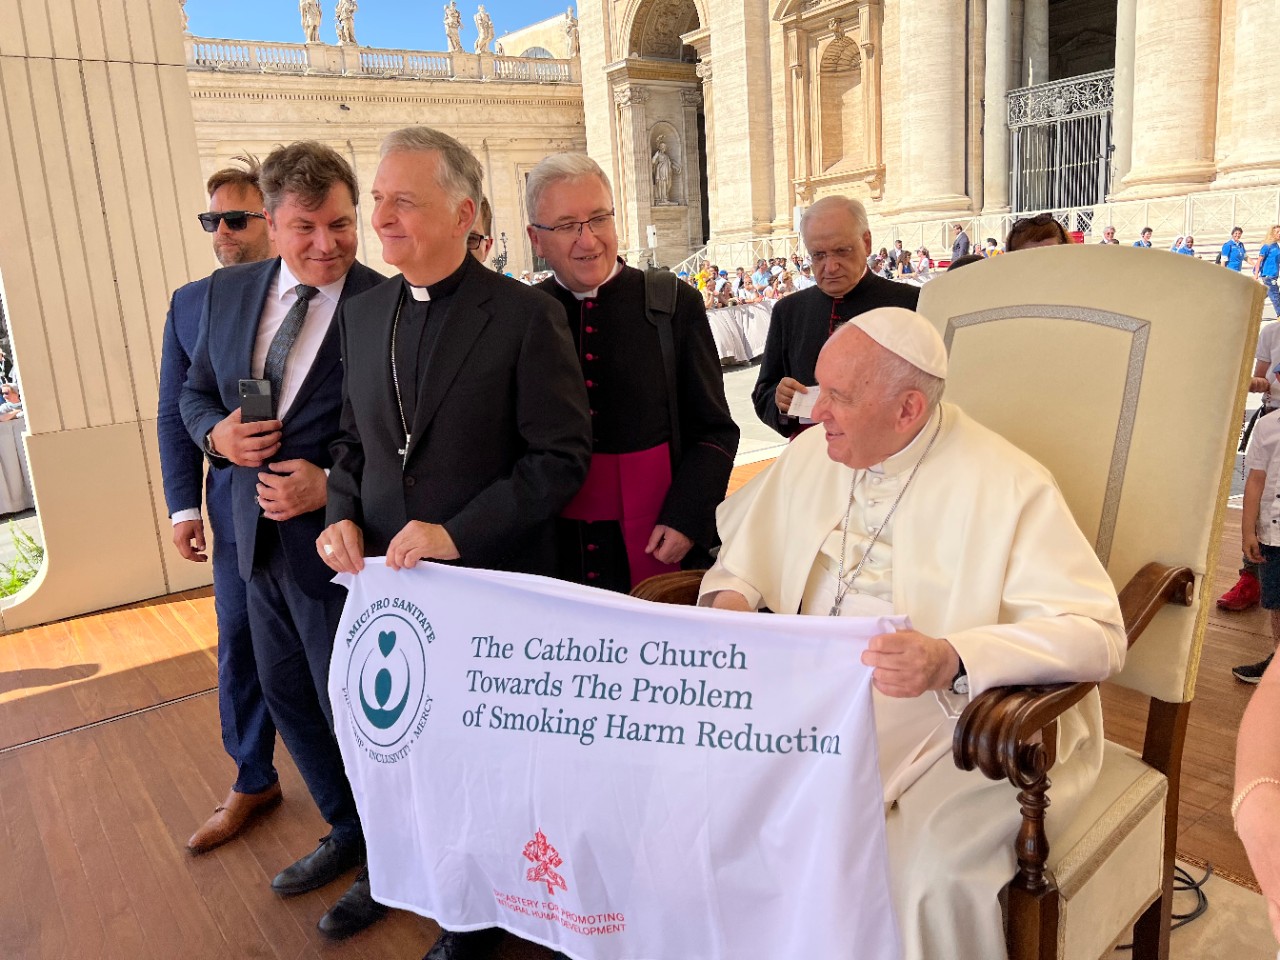 “A Igreja Católica face à questão da redução dos danos causados pelo tabagismo.”